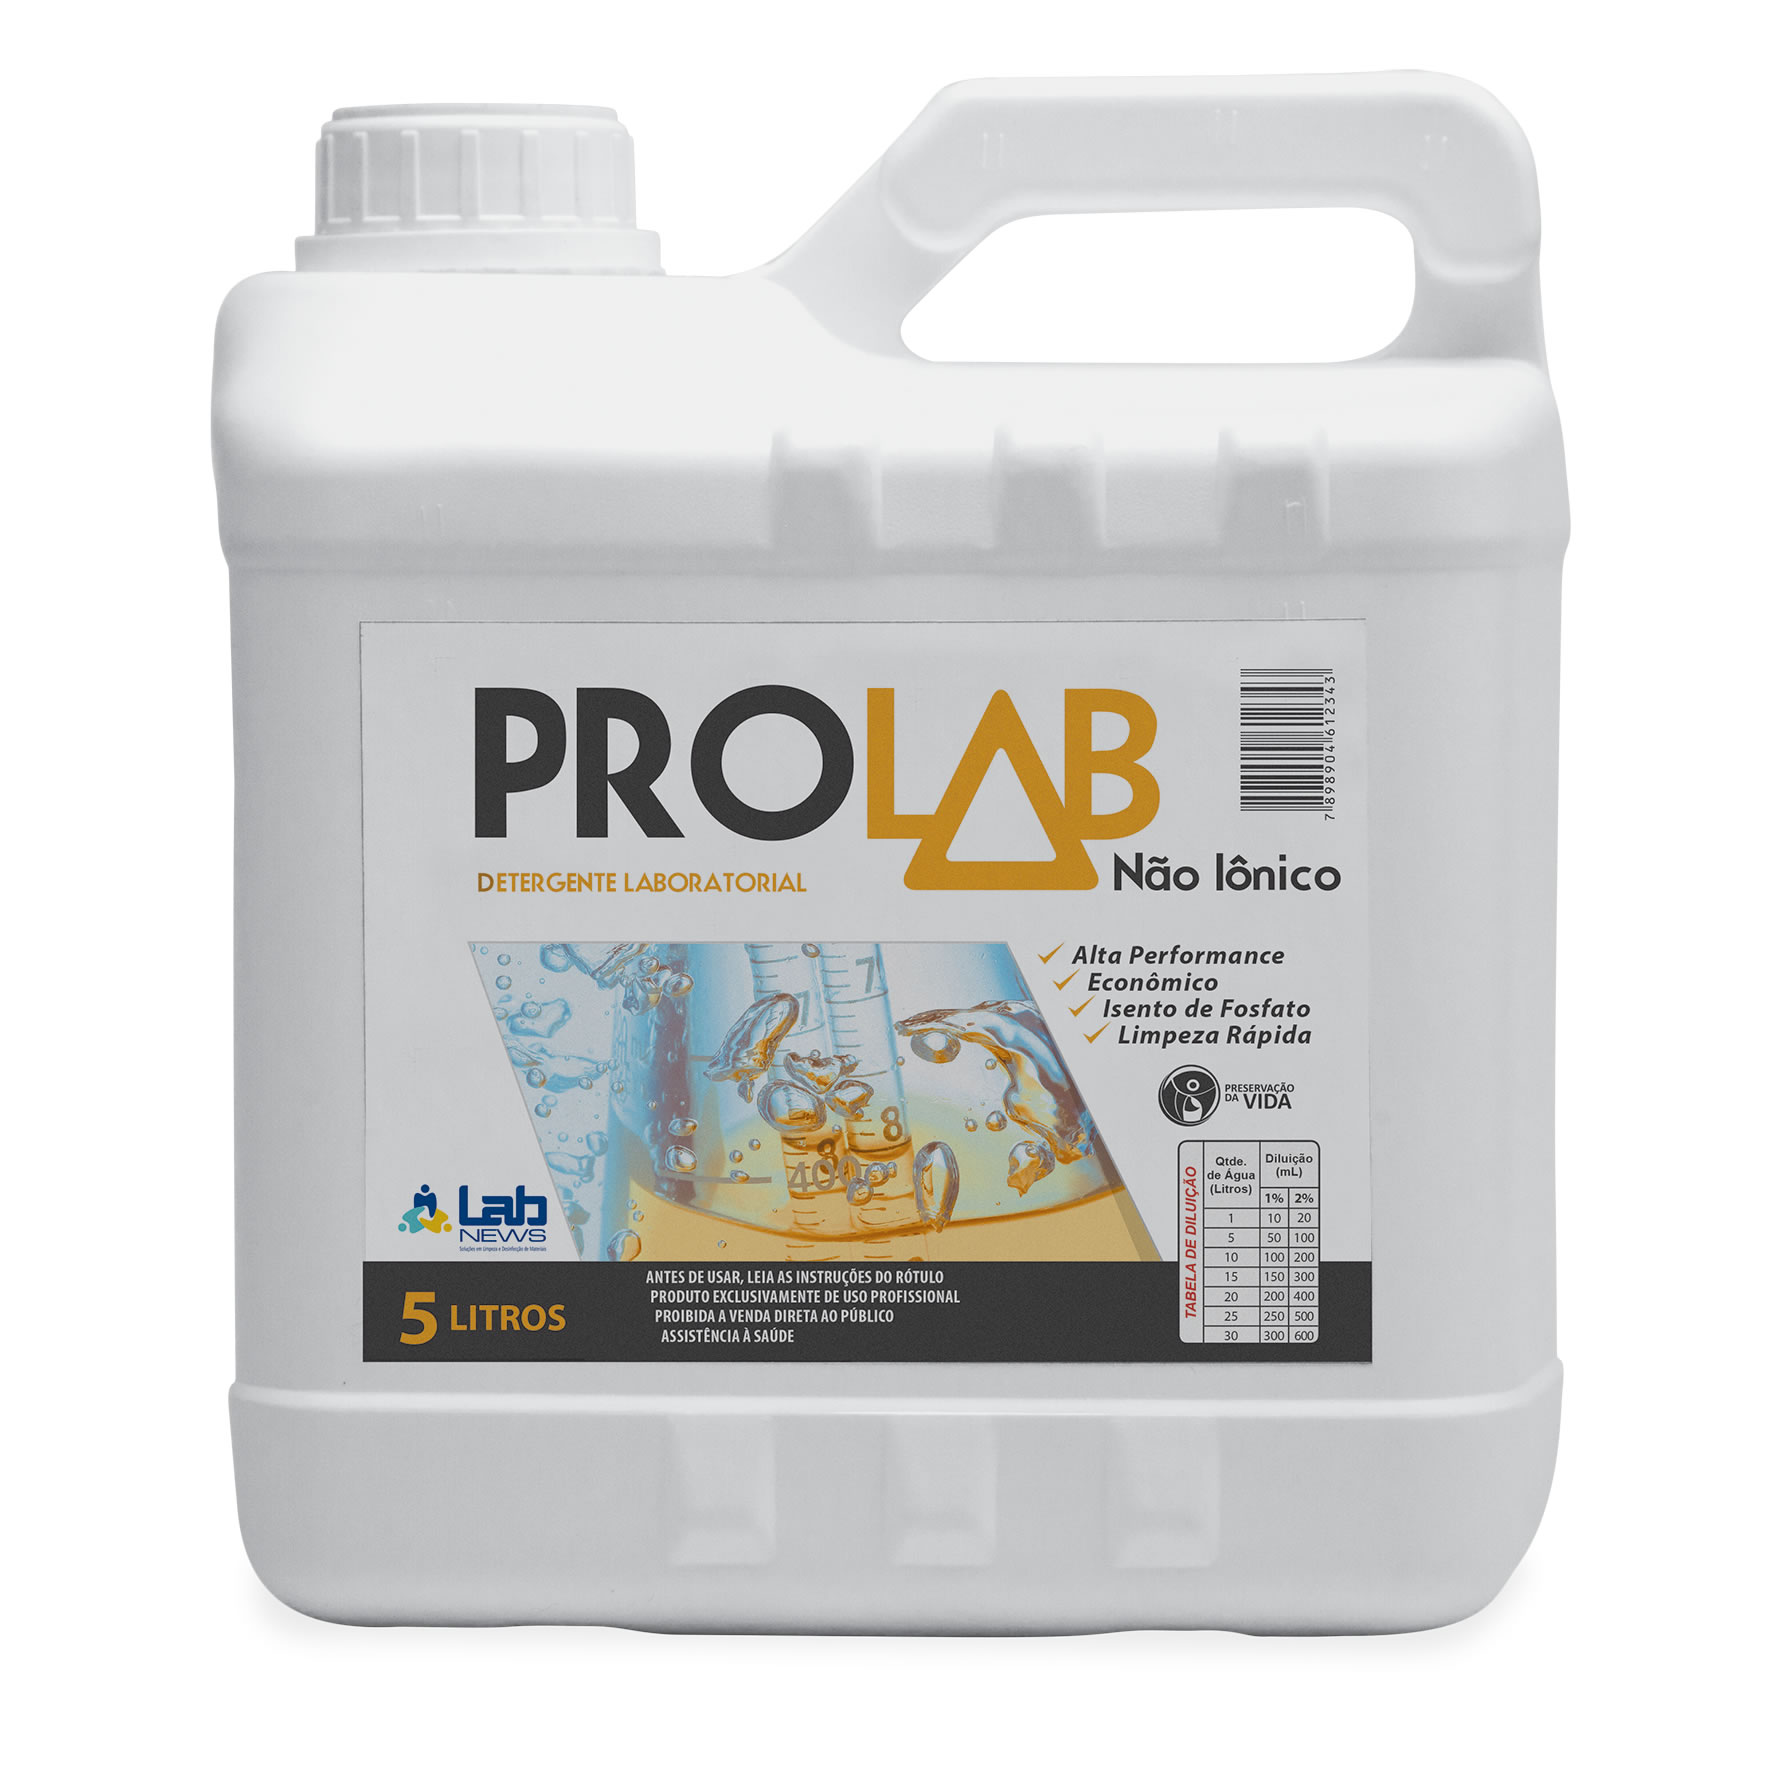 Detergente Prolab Não Iônico fr com 5 litros